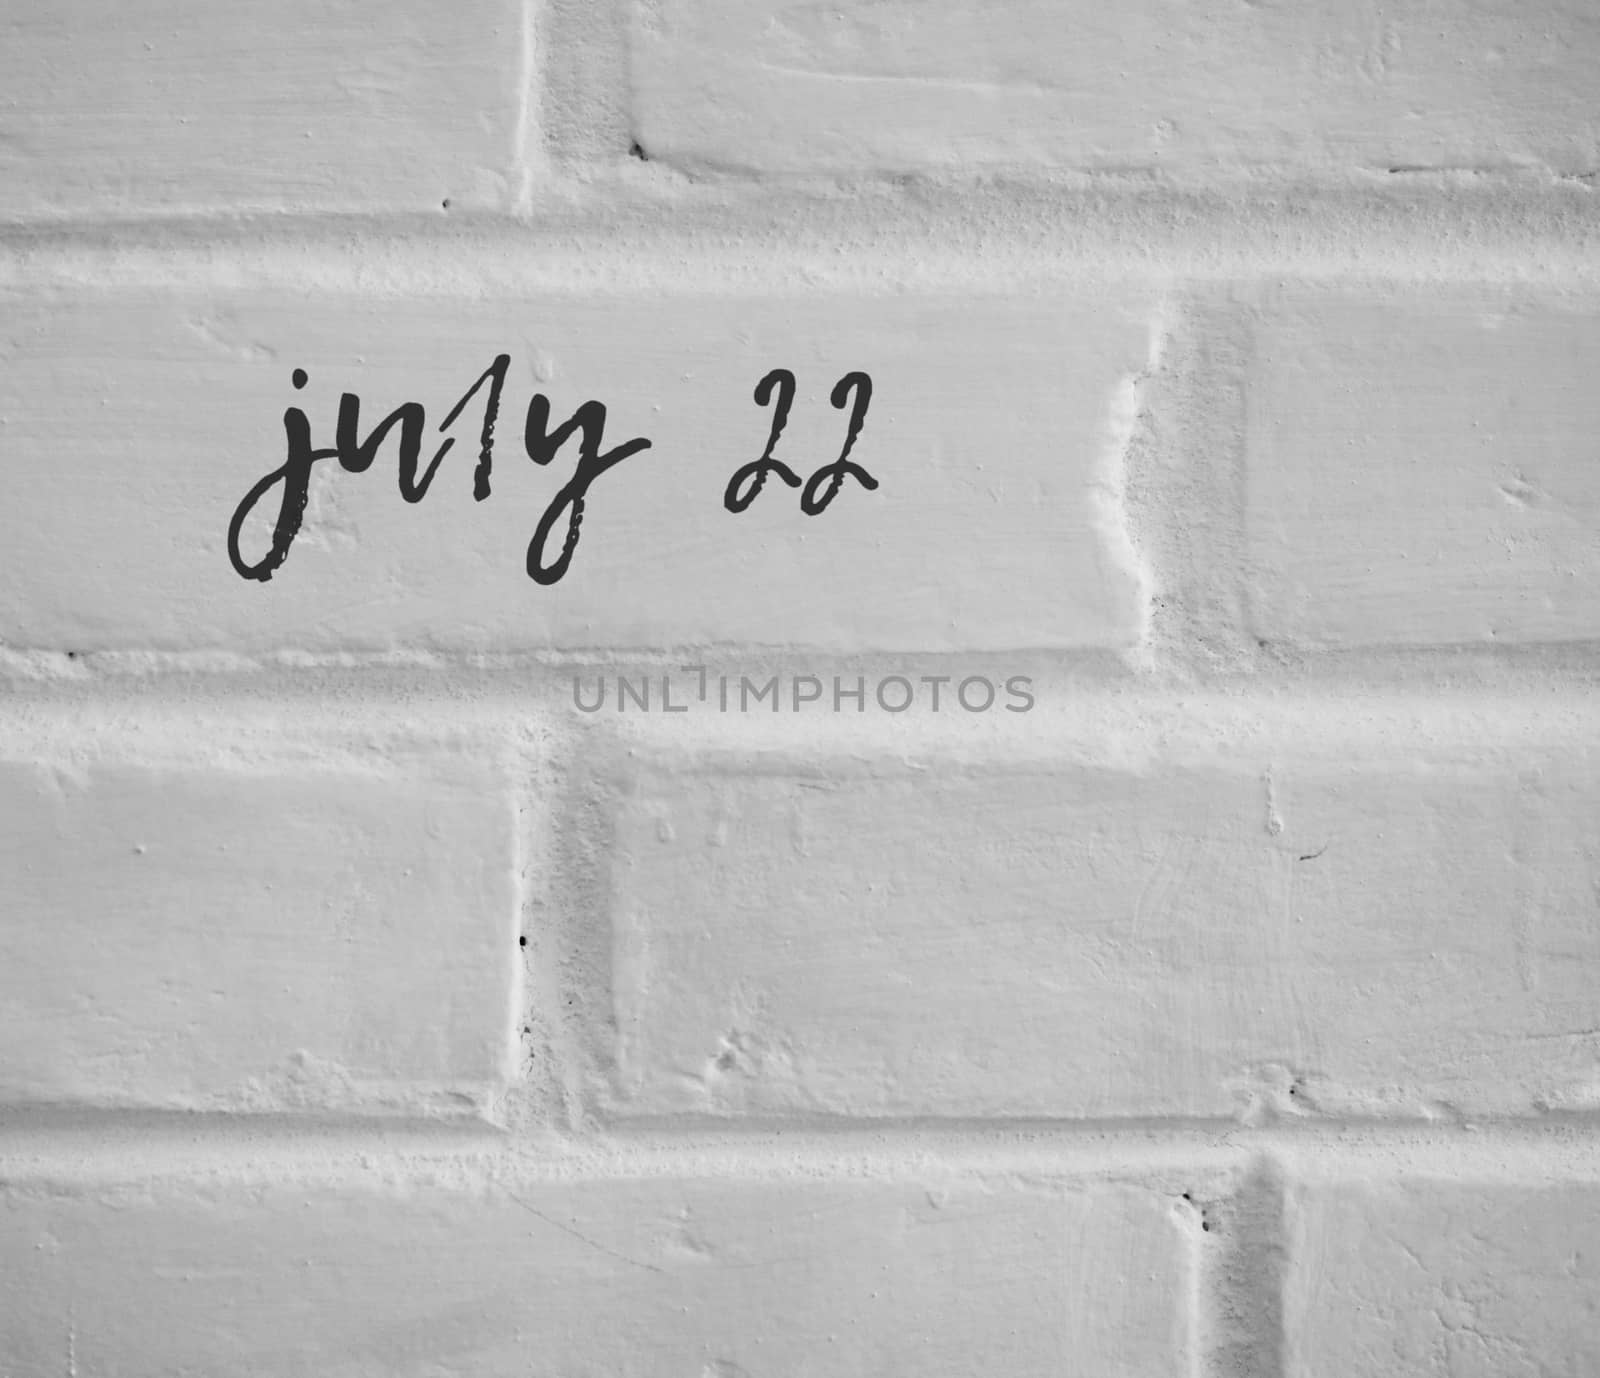 PHOTO OF july 22 WRITTEN ON WHITE PLAIN BRICK WALL